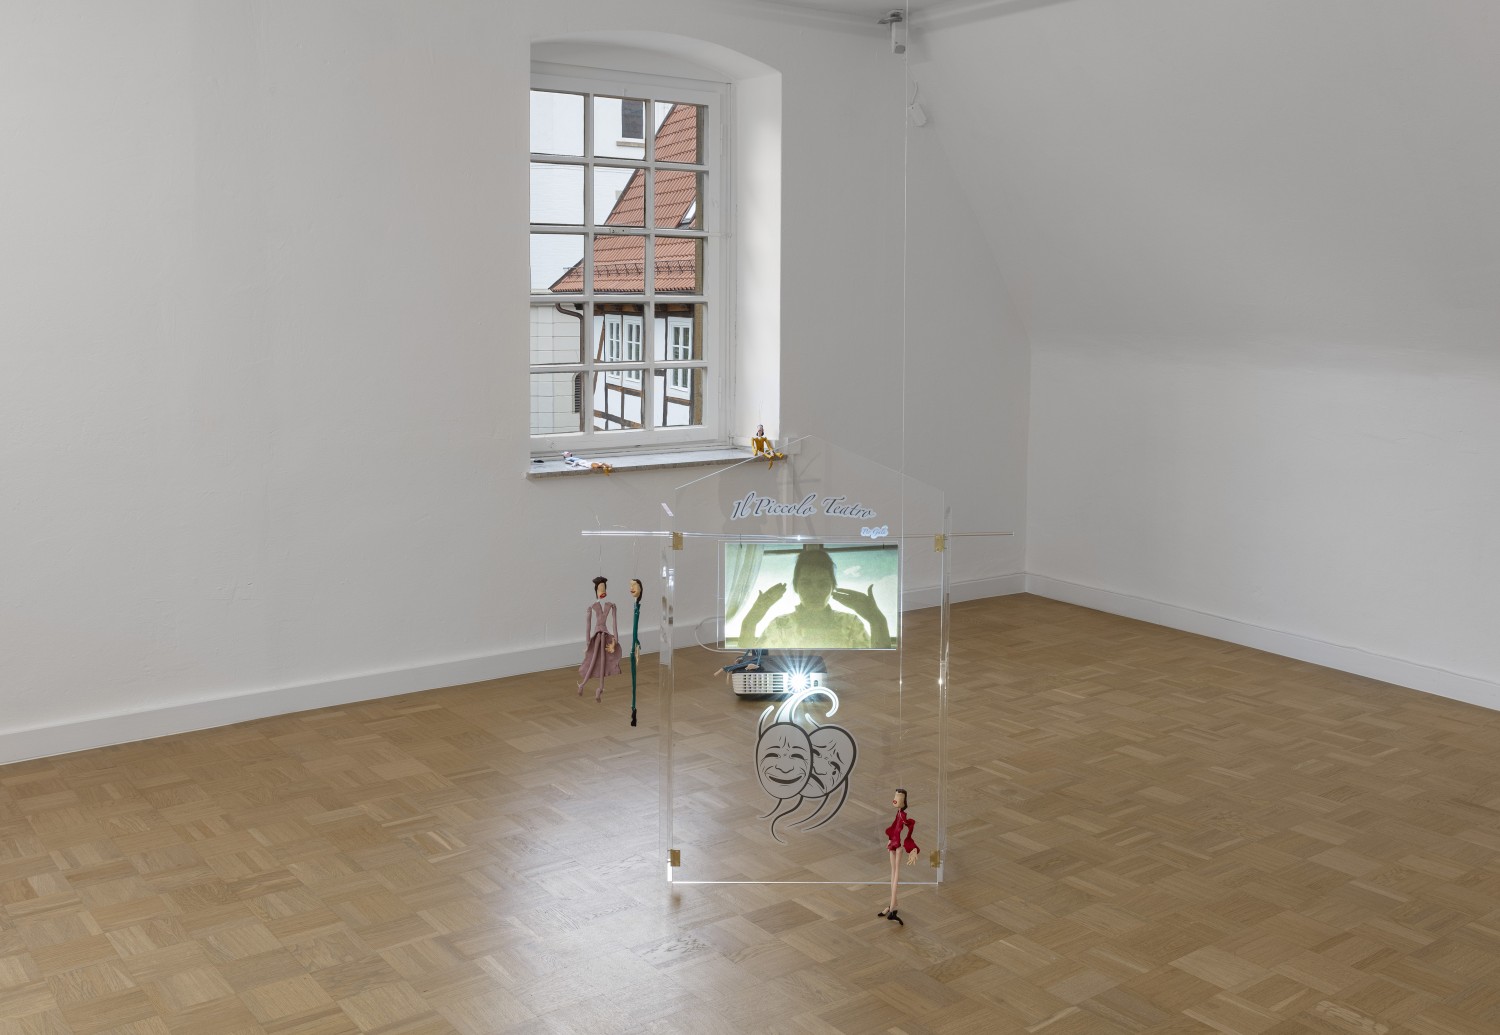 Die Arbeit "Il piccolo teatro" von Julie Béna stellt ein Puppentheater aus Plexiglas dar, das auf dem Boden steht. Auf das Objekt wird ein Video projiziert, das eine Handperformance der Künstlerin zeigt. Im Raum, um das Objekt herum, sind kleine Marionettenpuppen platziert.